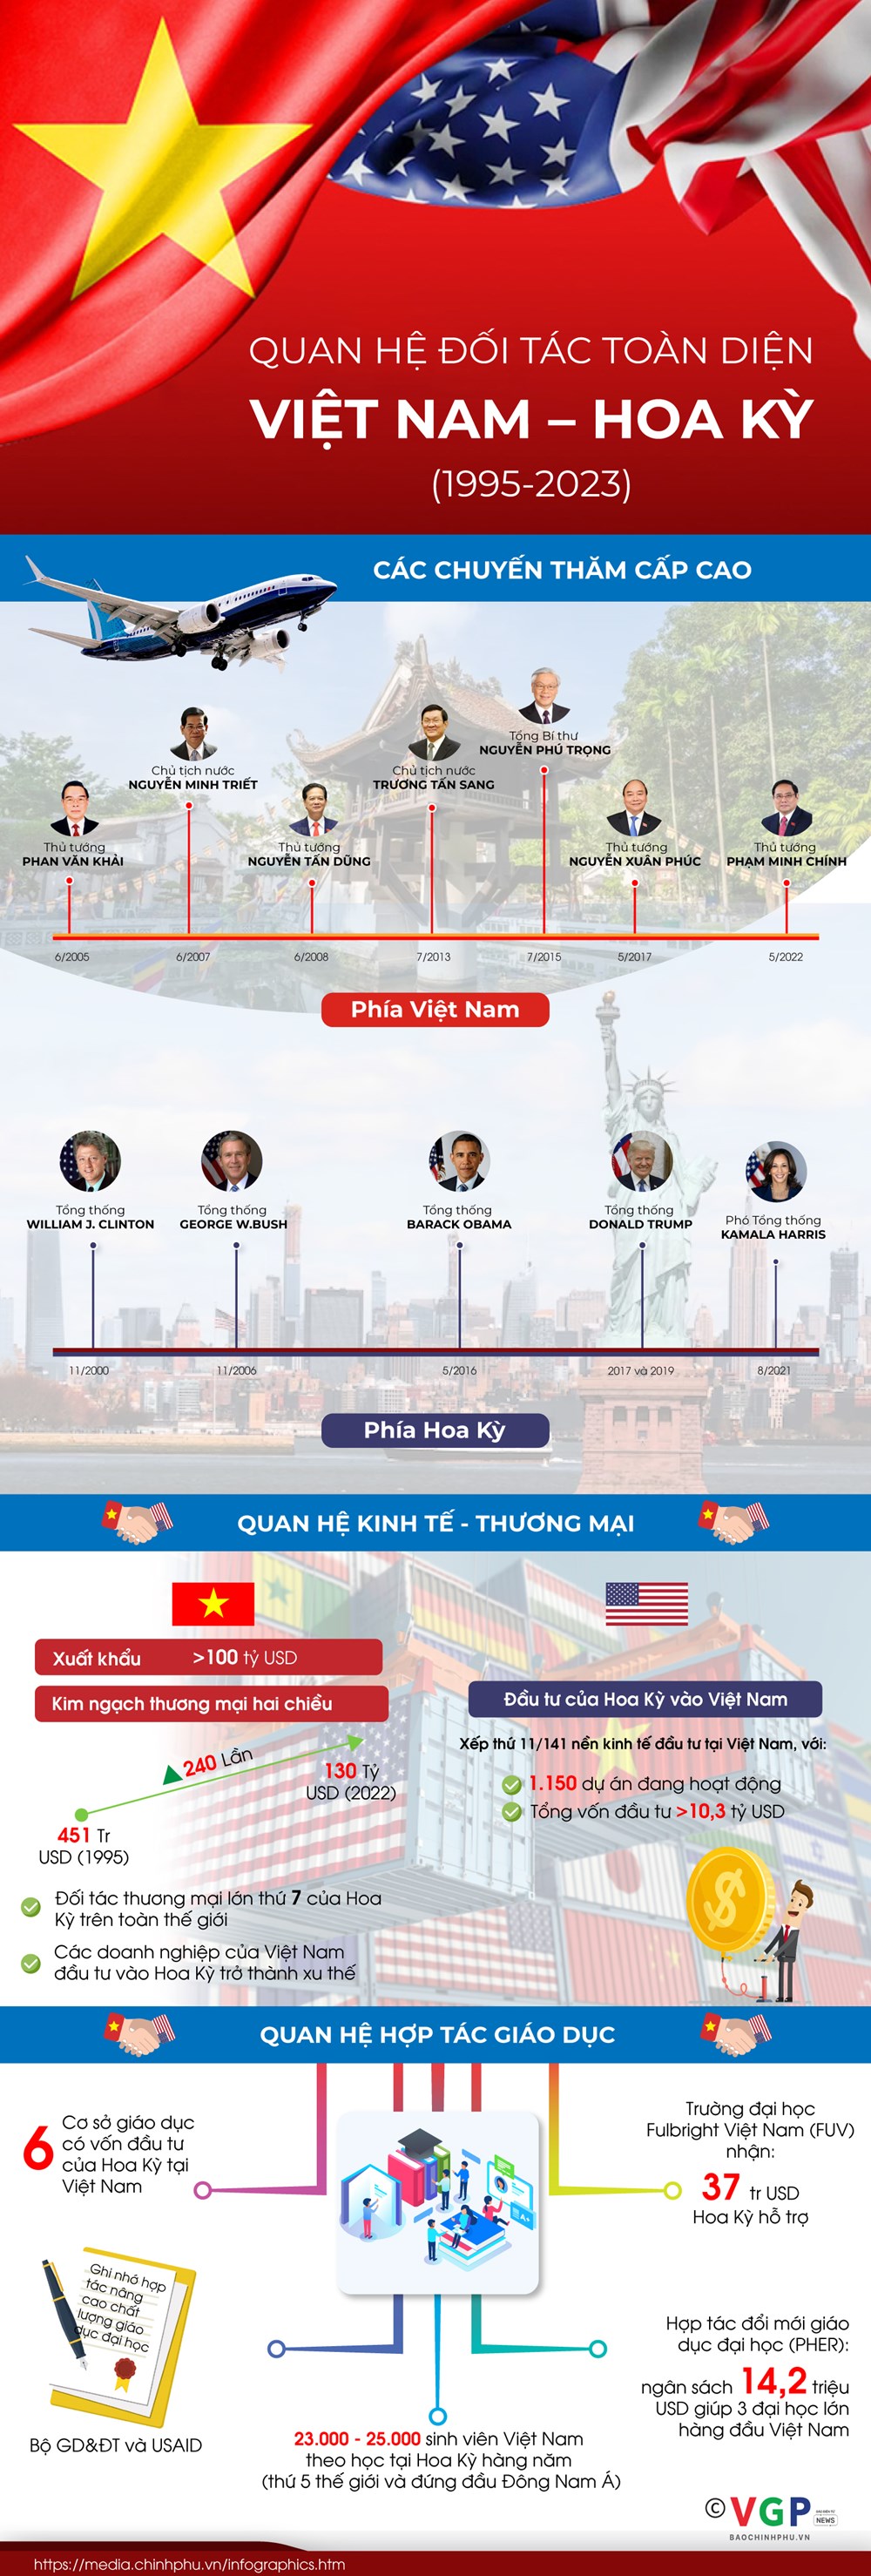 Quan hệ đối tác toàn diện Việt Nam - Hoa Kỳ - ảnh 1